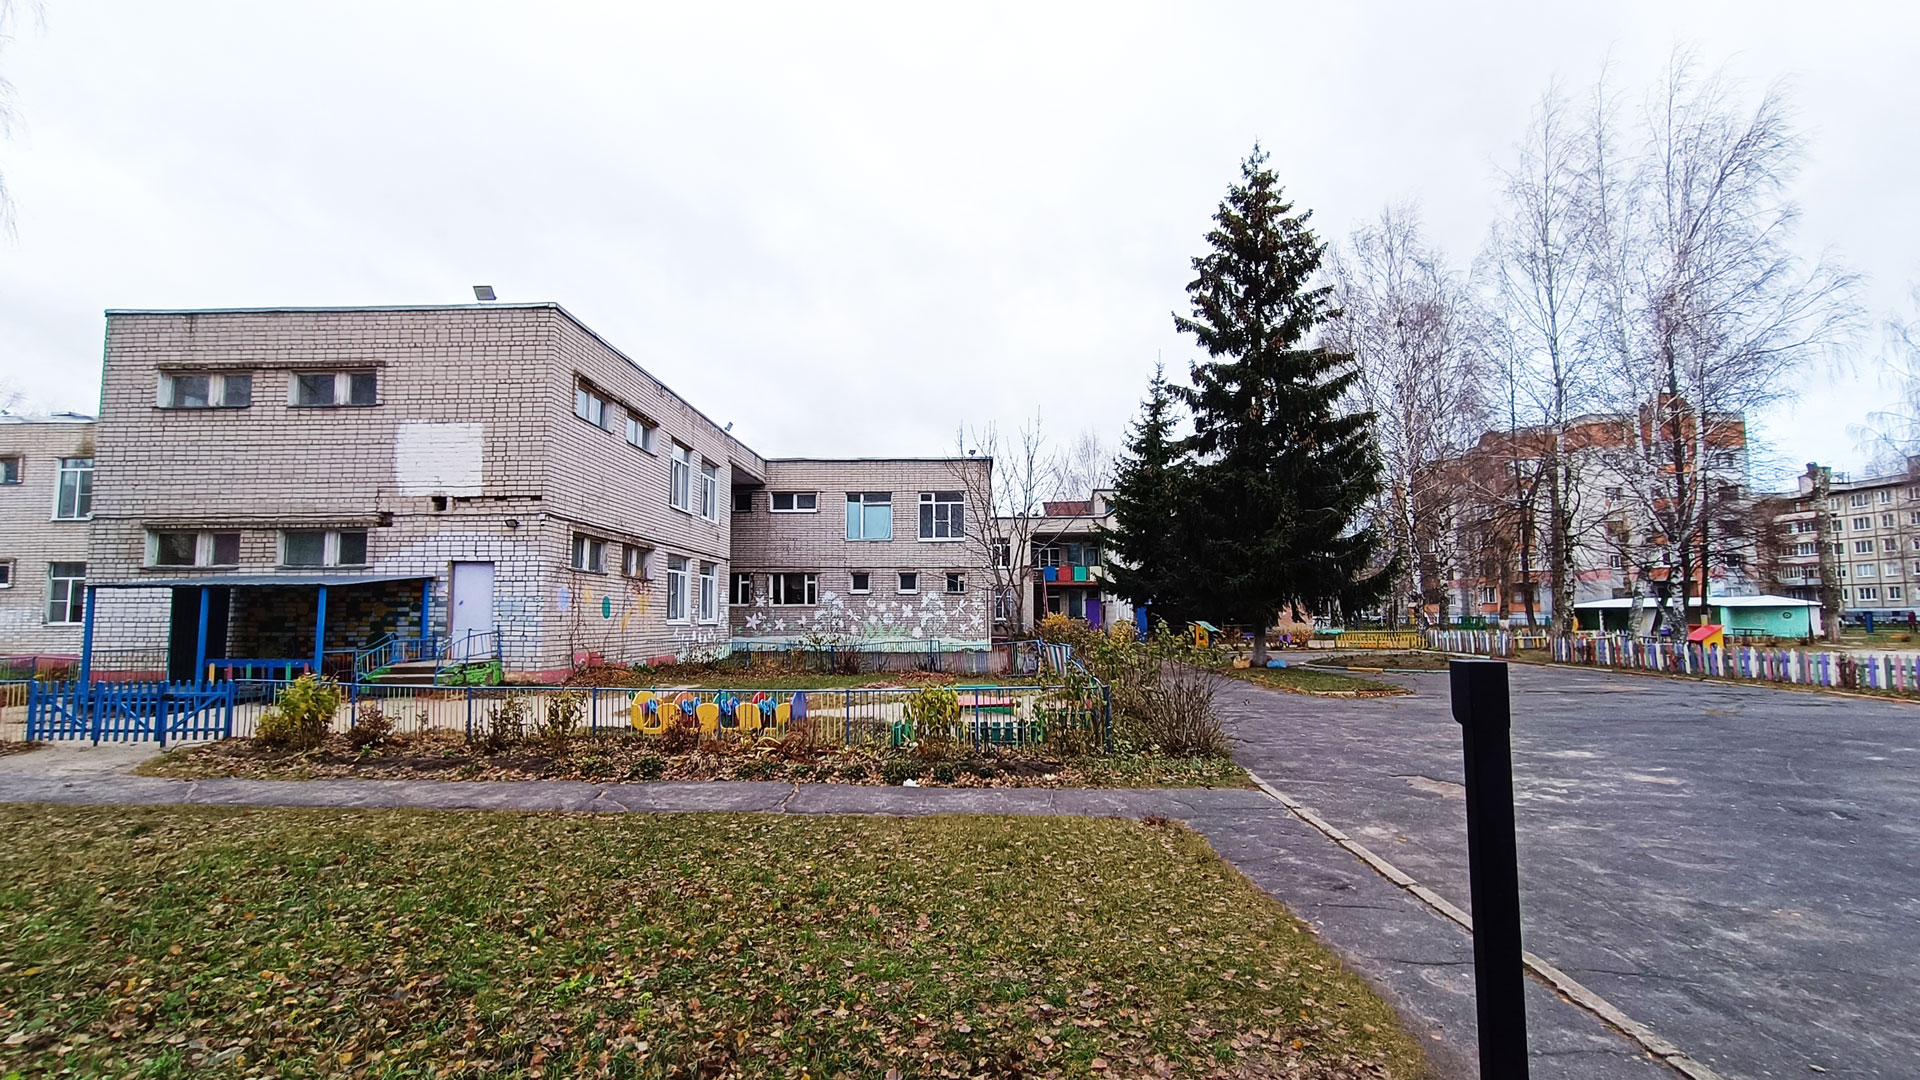 Детский сад 44 Ярославль: общий вид здания и территории. 